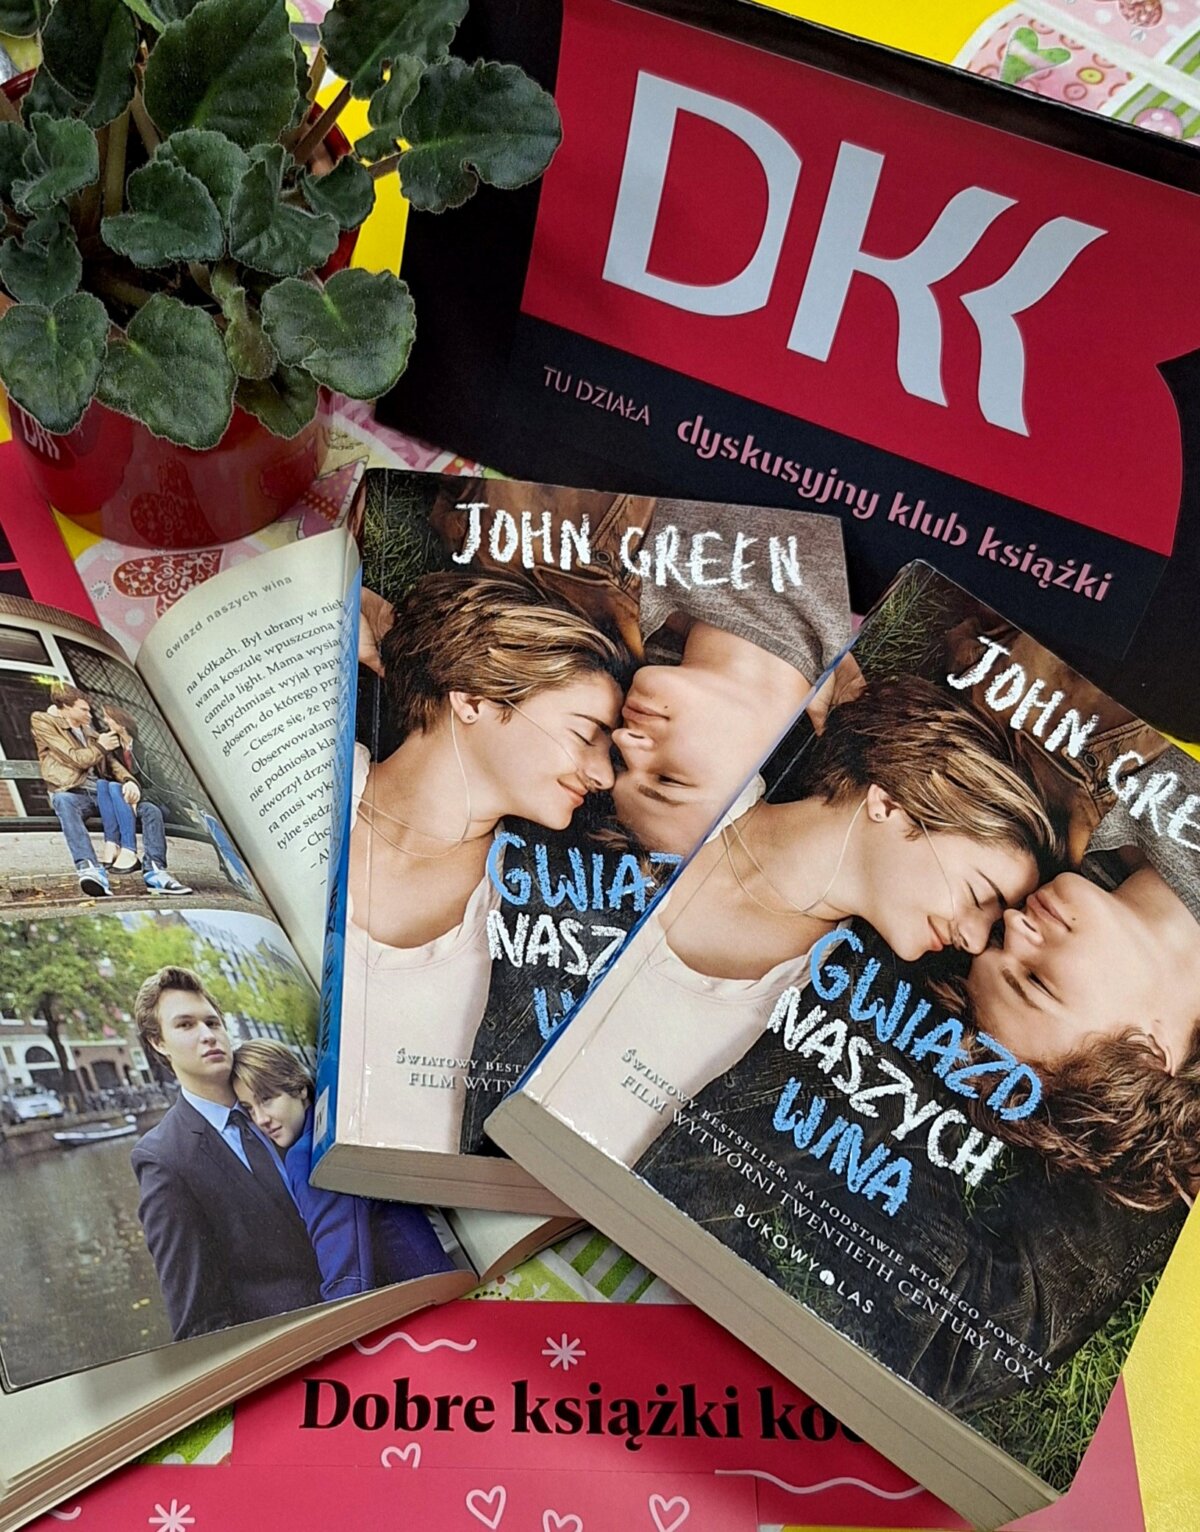 Na stole leżą 3 książki „Gwiazd naszych wina”, jedna jest otwarta na stronie z kadrami z filmu. Powyżej książek znajduje się tabliczka z logo DKK, a pod spodem zakładki do książek.